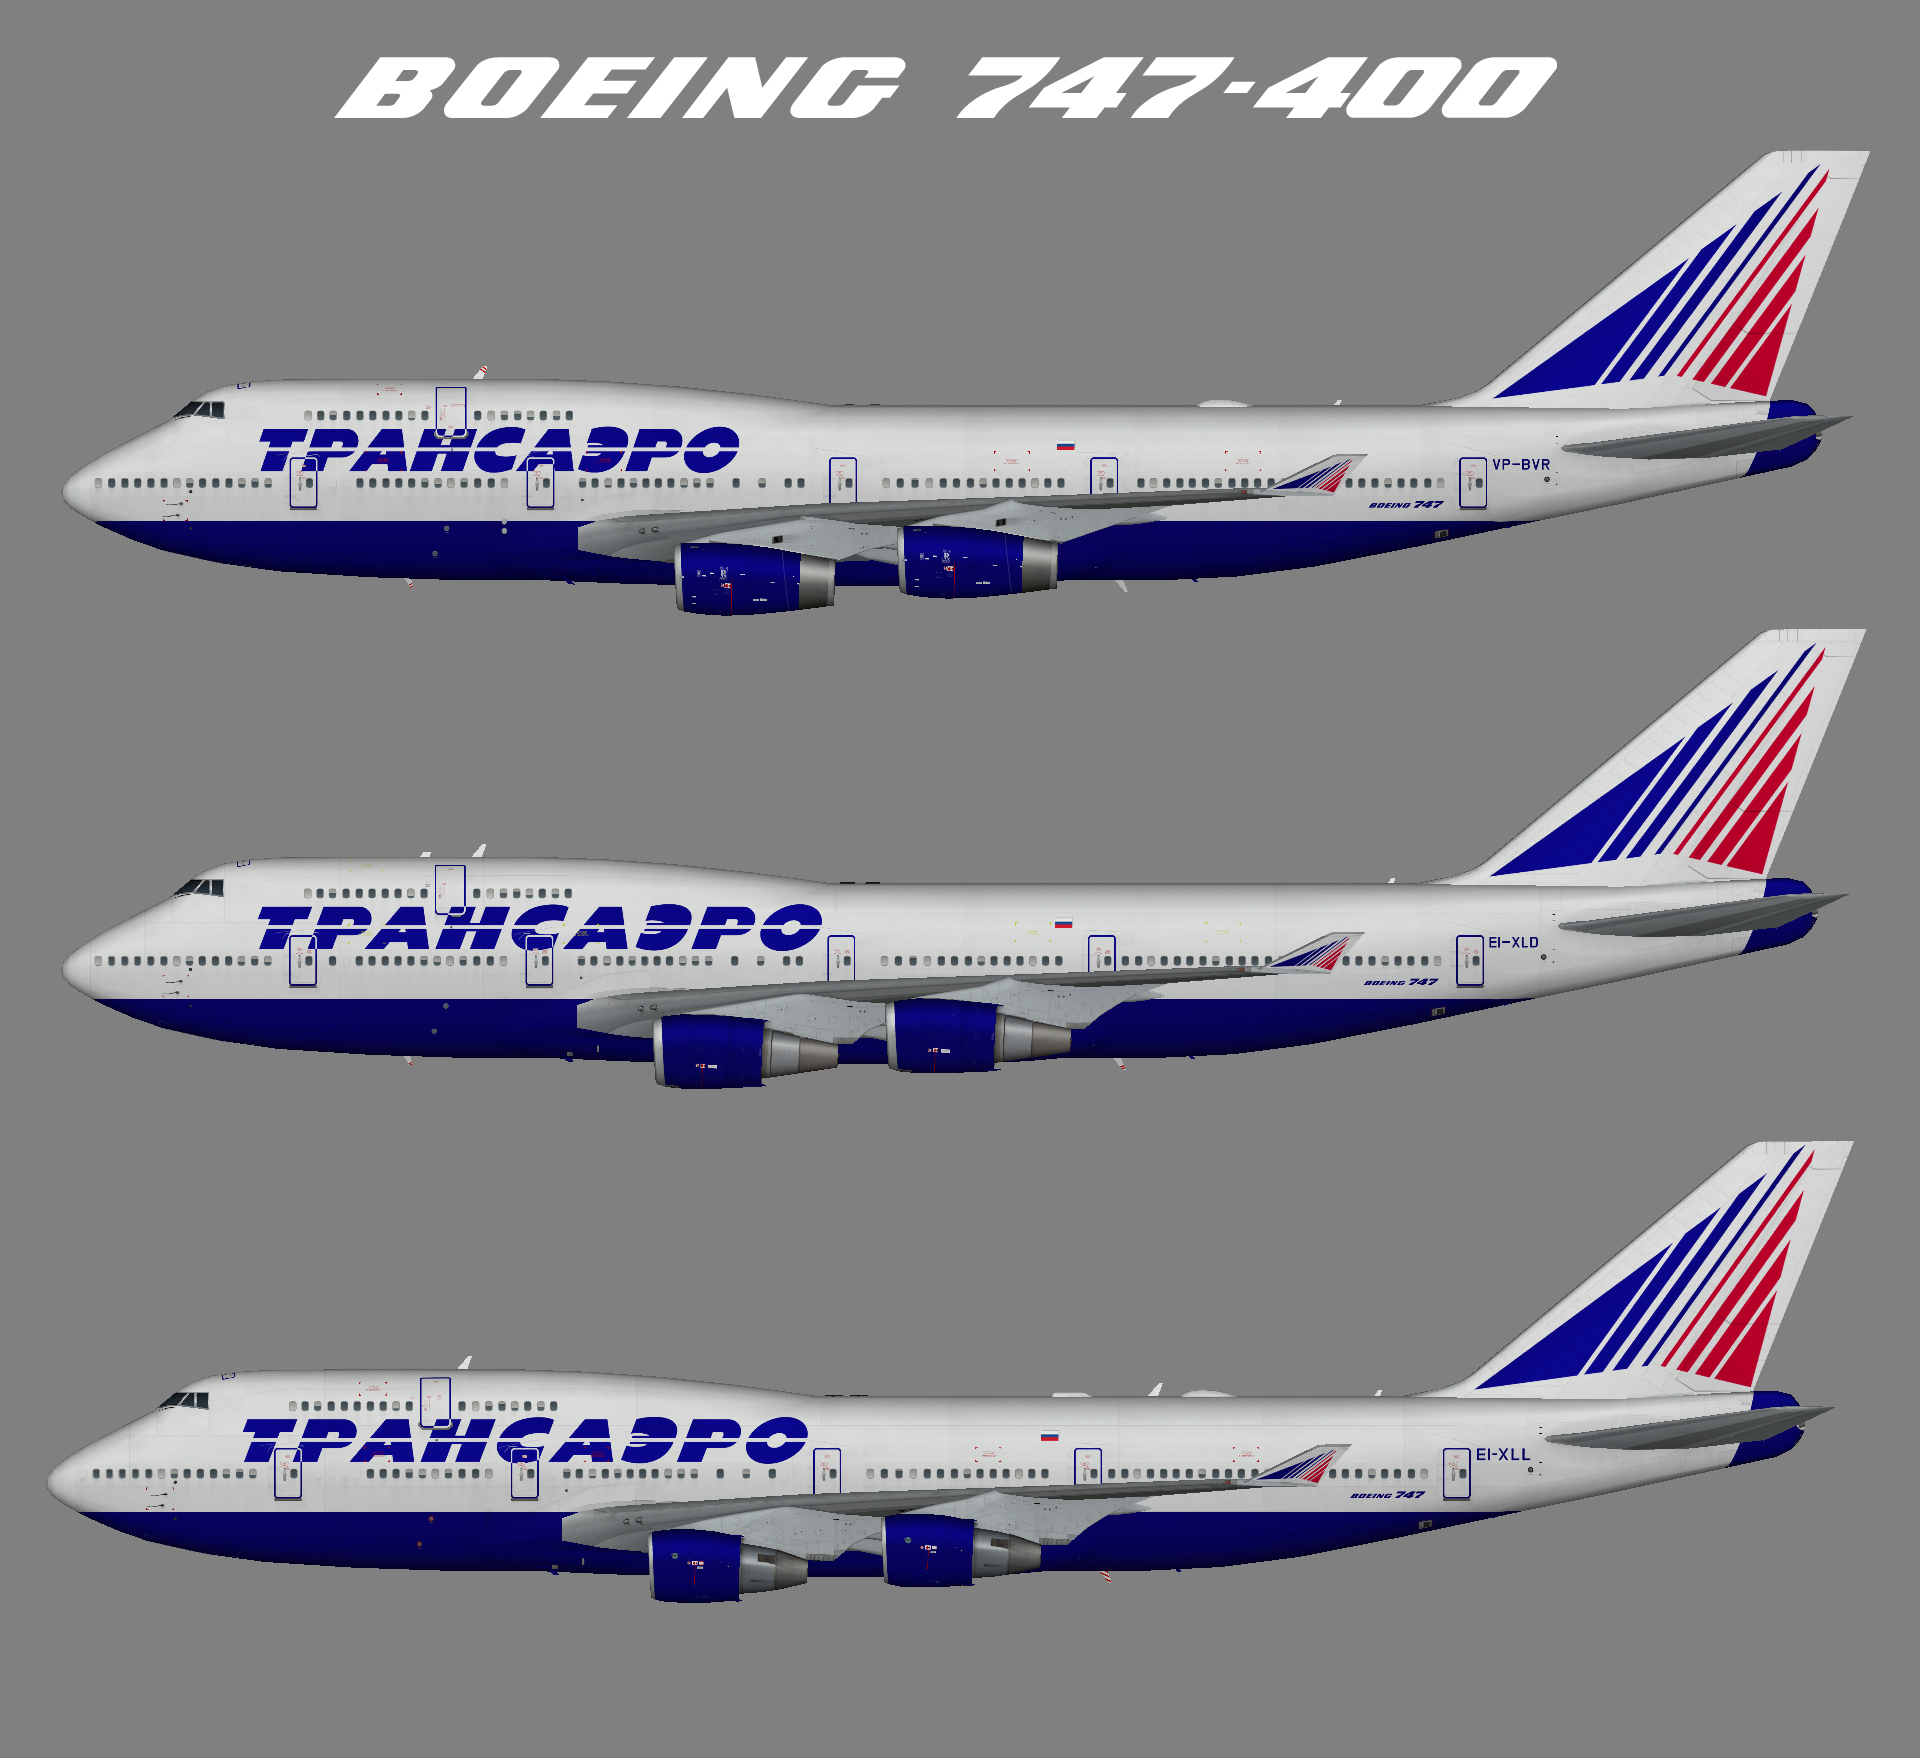 Transaero Airlines Boeing 747-400